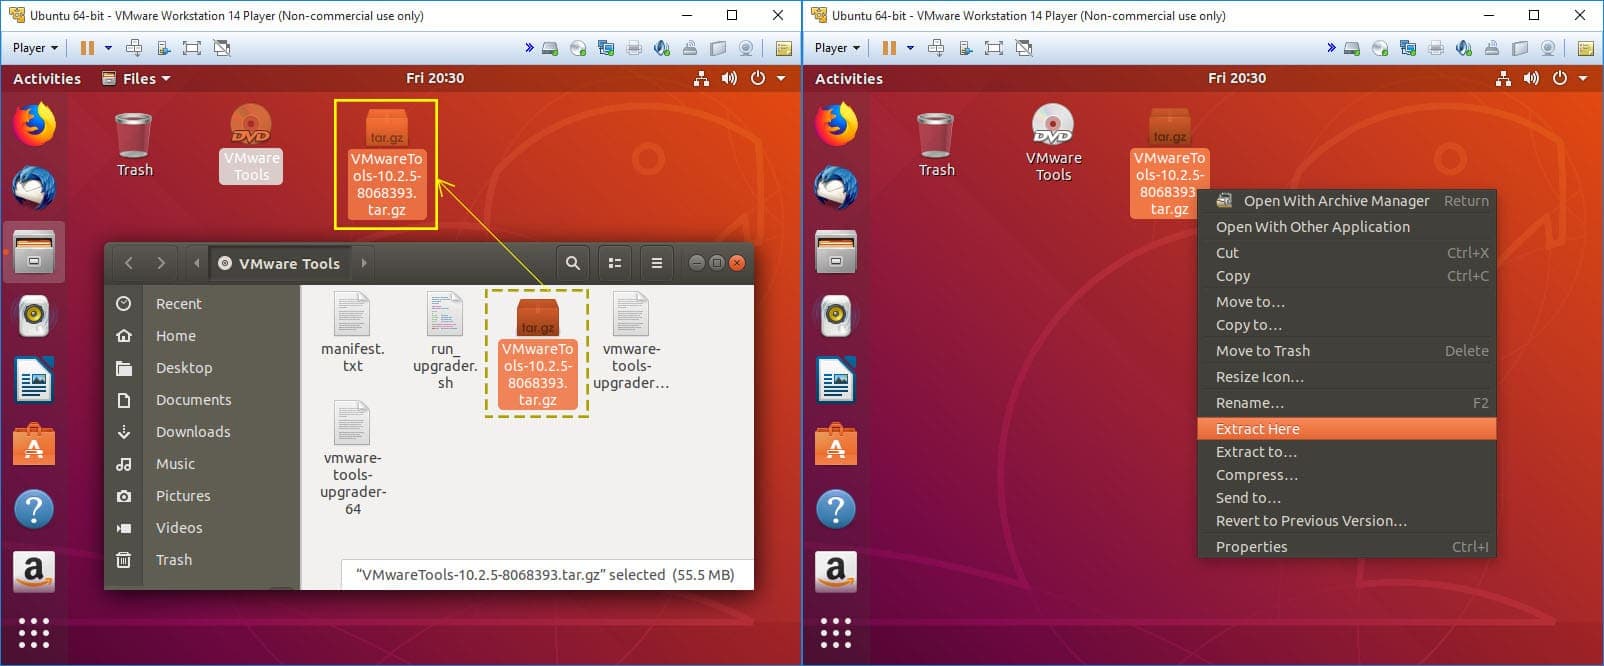 install virtualbox ubuntu 15.10 64